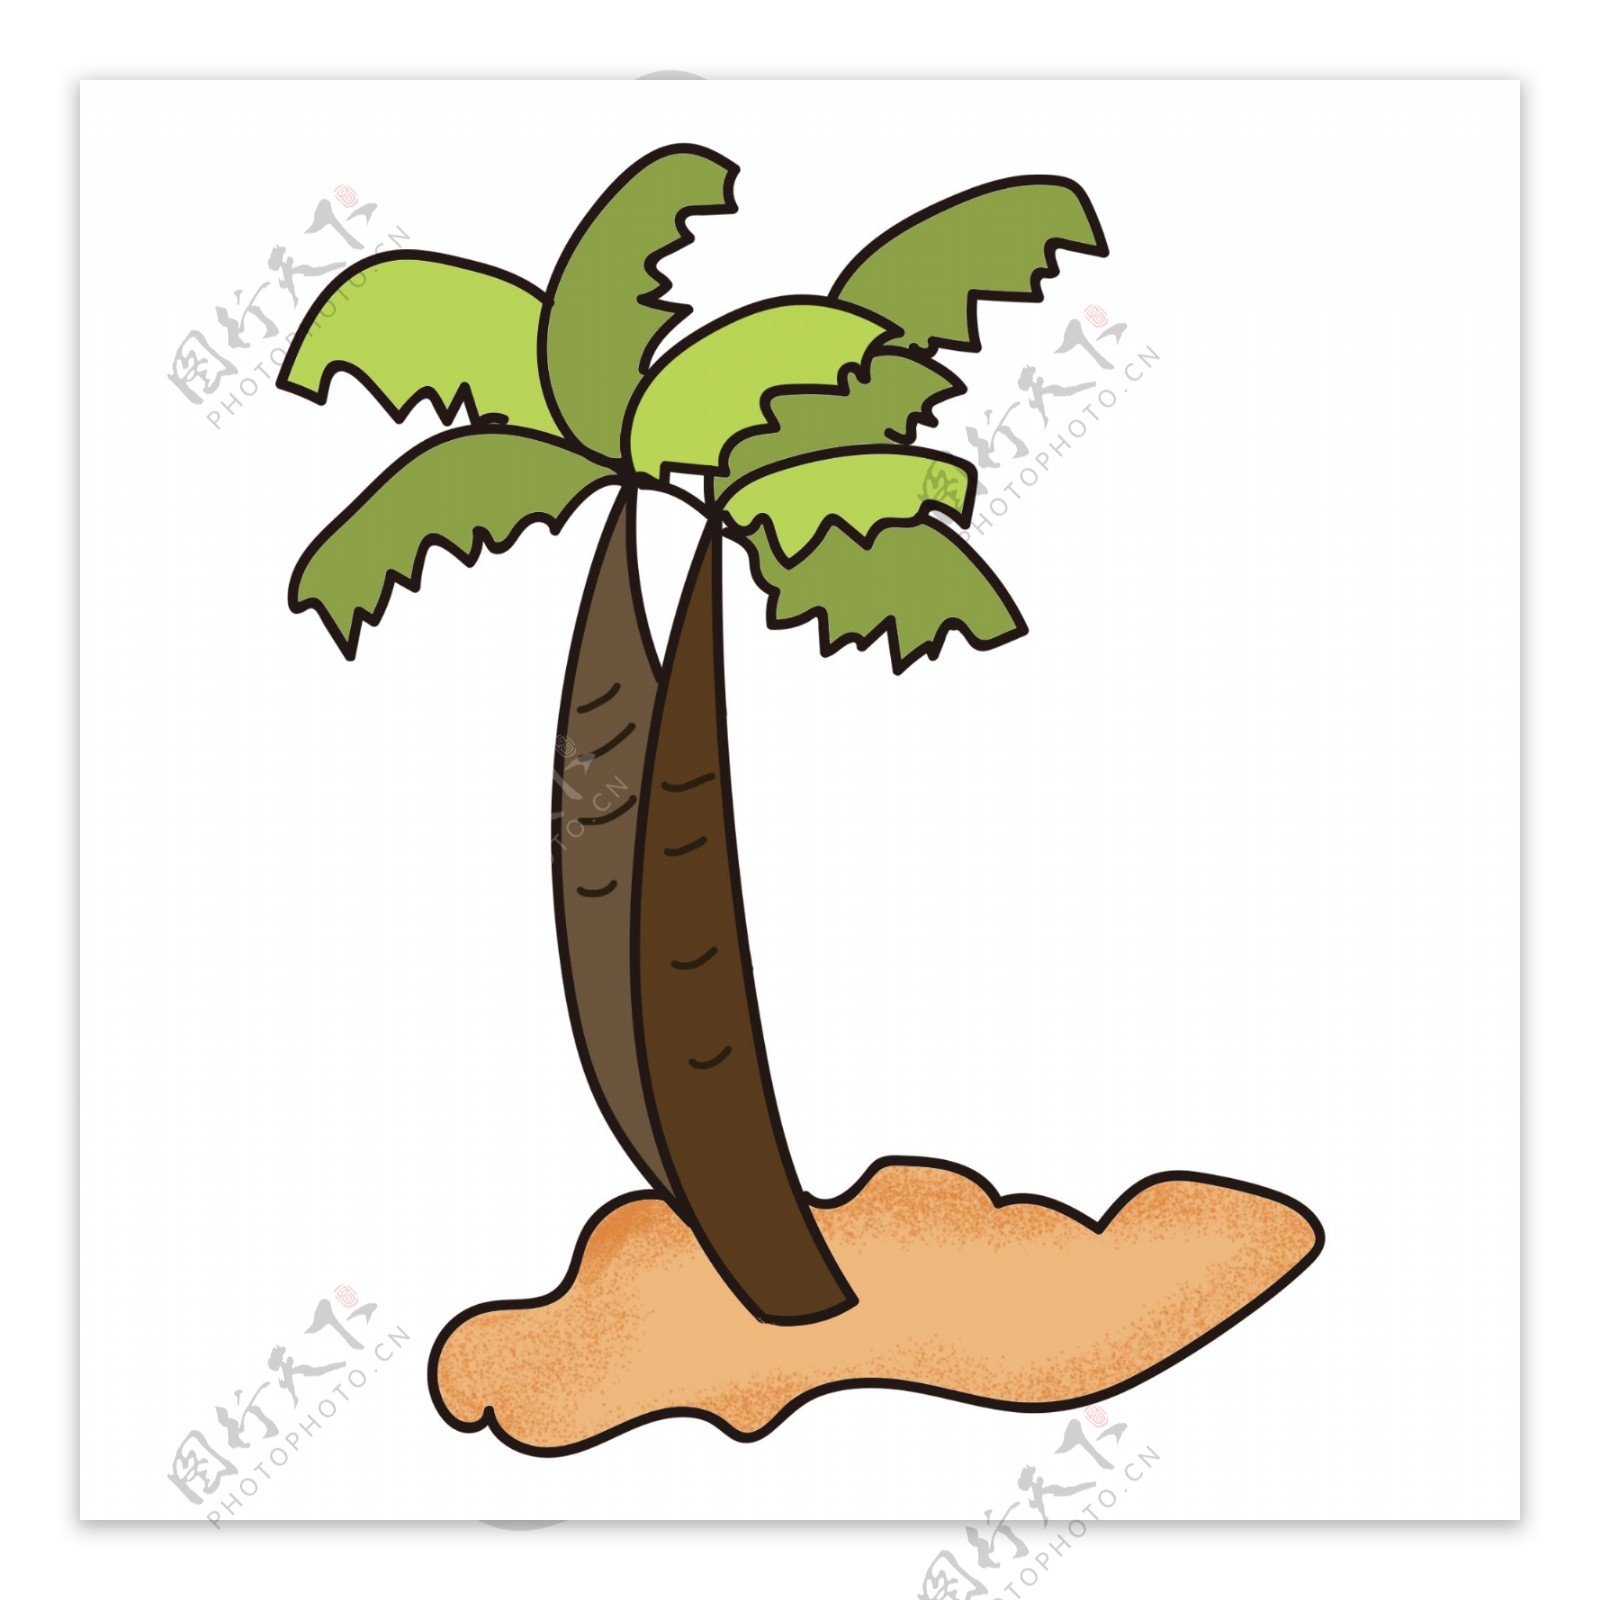 夏日卡通手绘椰子树